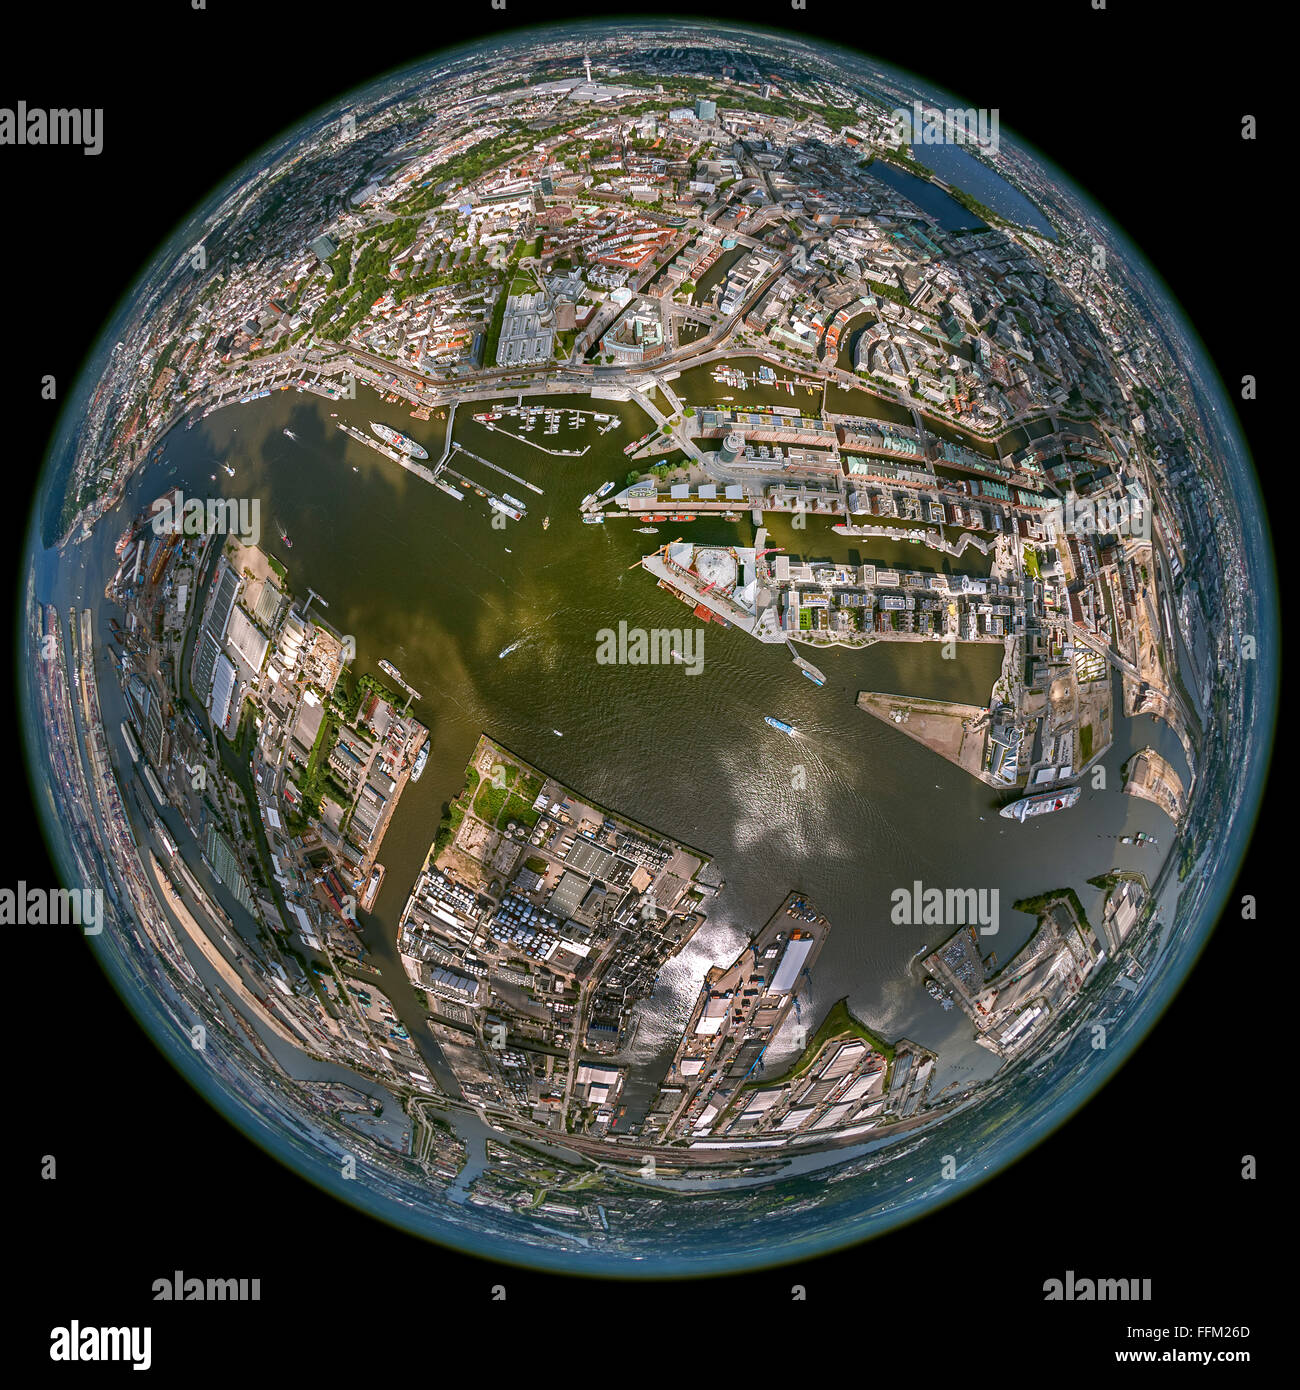 Luftaufnahme des Hamburger Hafens fisheye-Objektiv, fisheye, Runde Bild, Elbphilharmonie, Werft Blohm und Voss Werft, Stockfoto